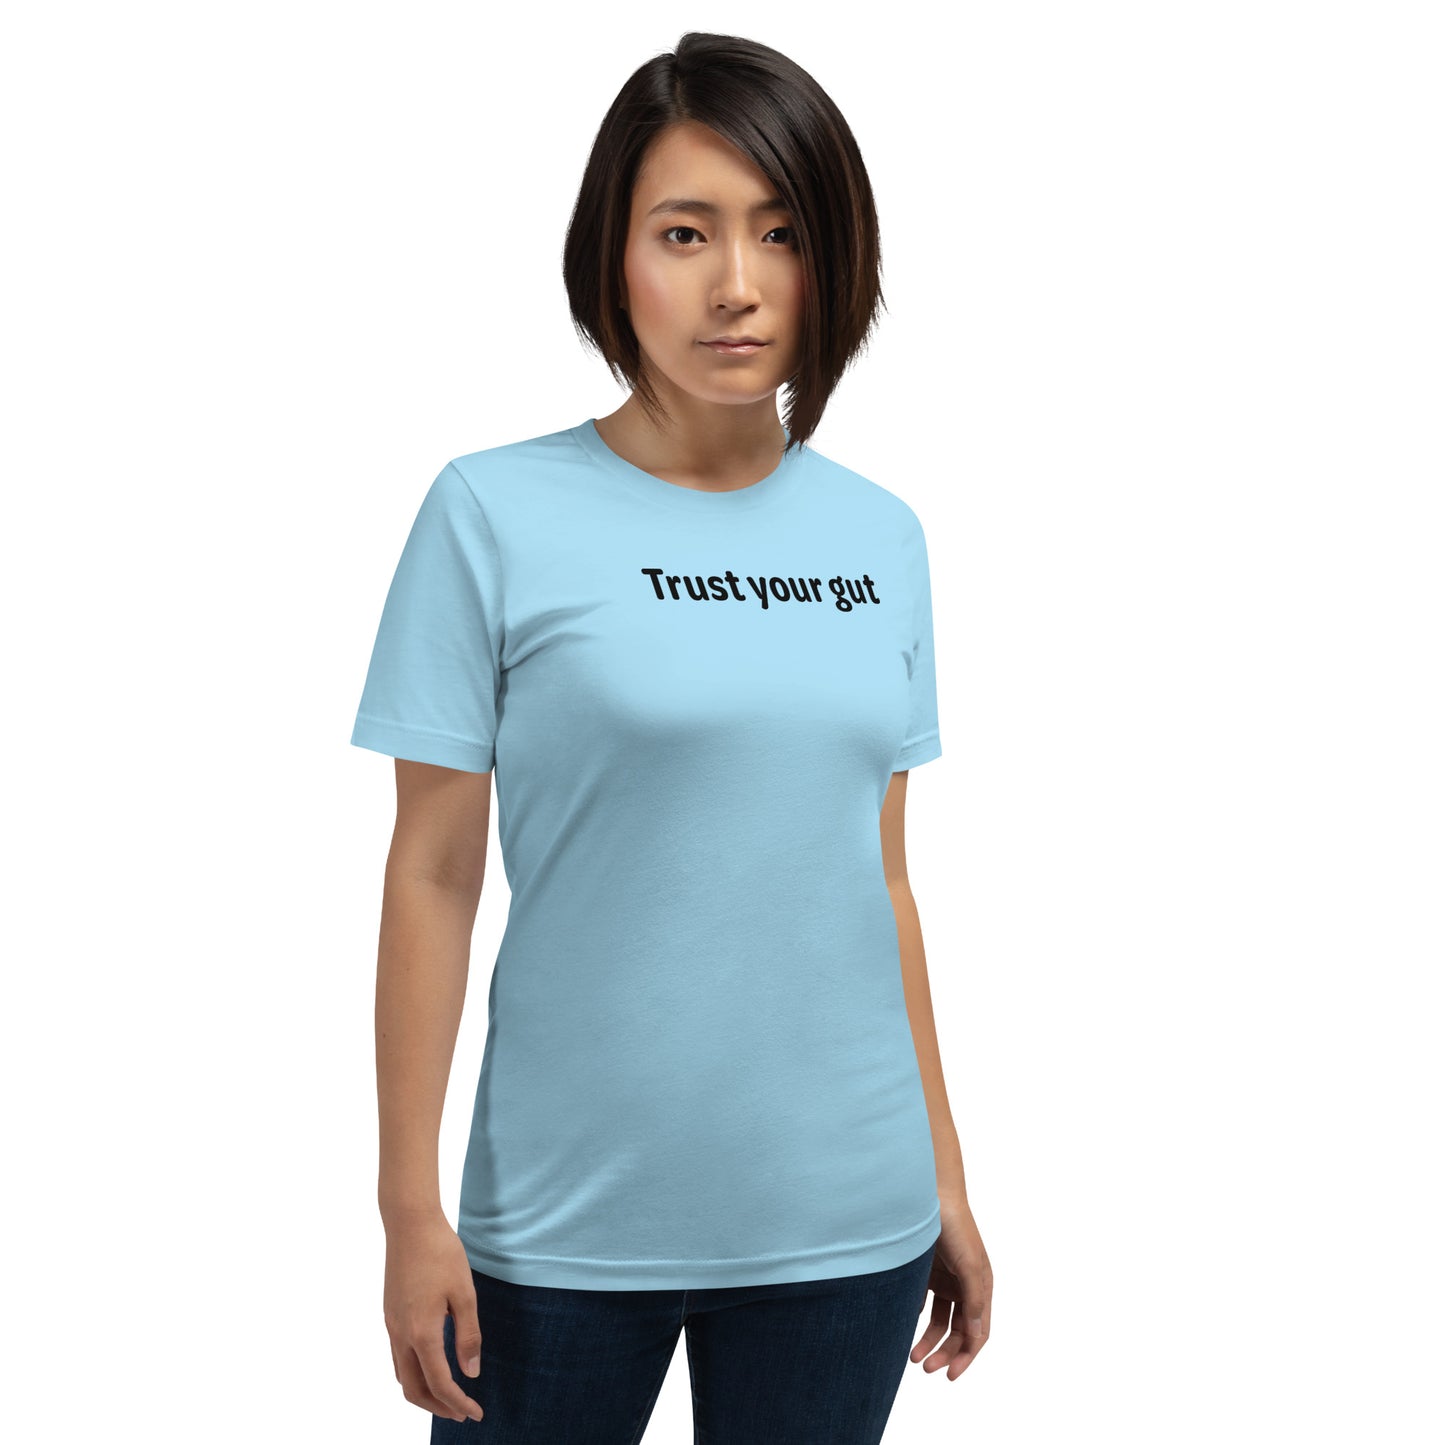 Trust your gut - Black Text - Womens T-Shirt